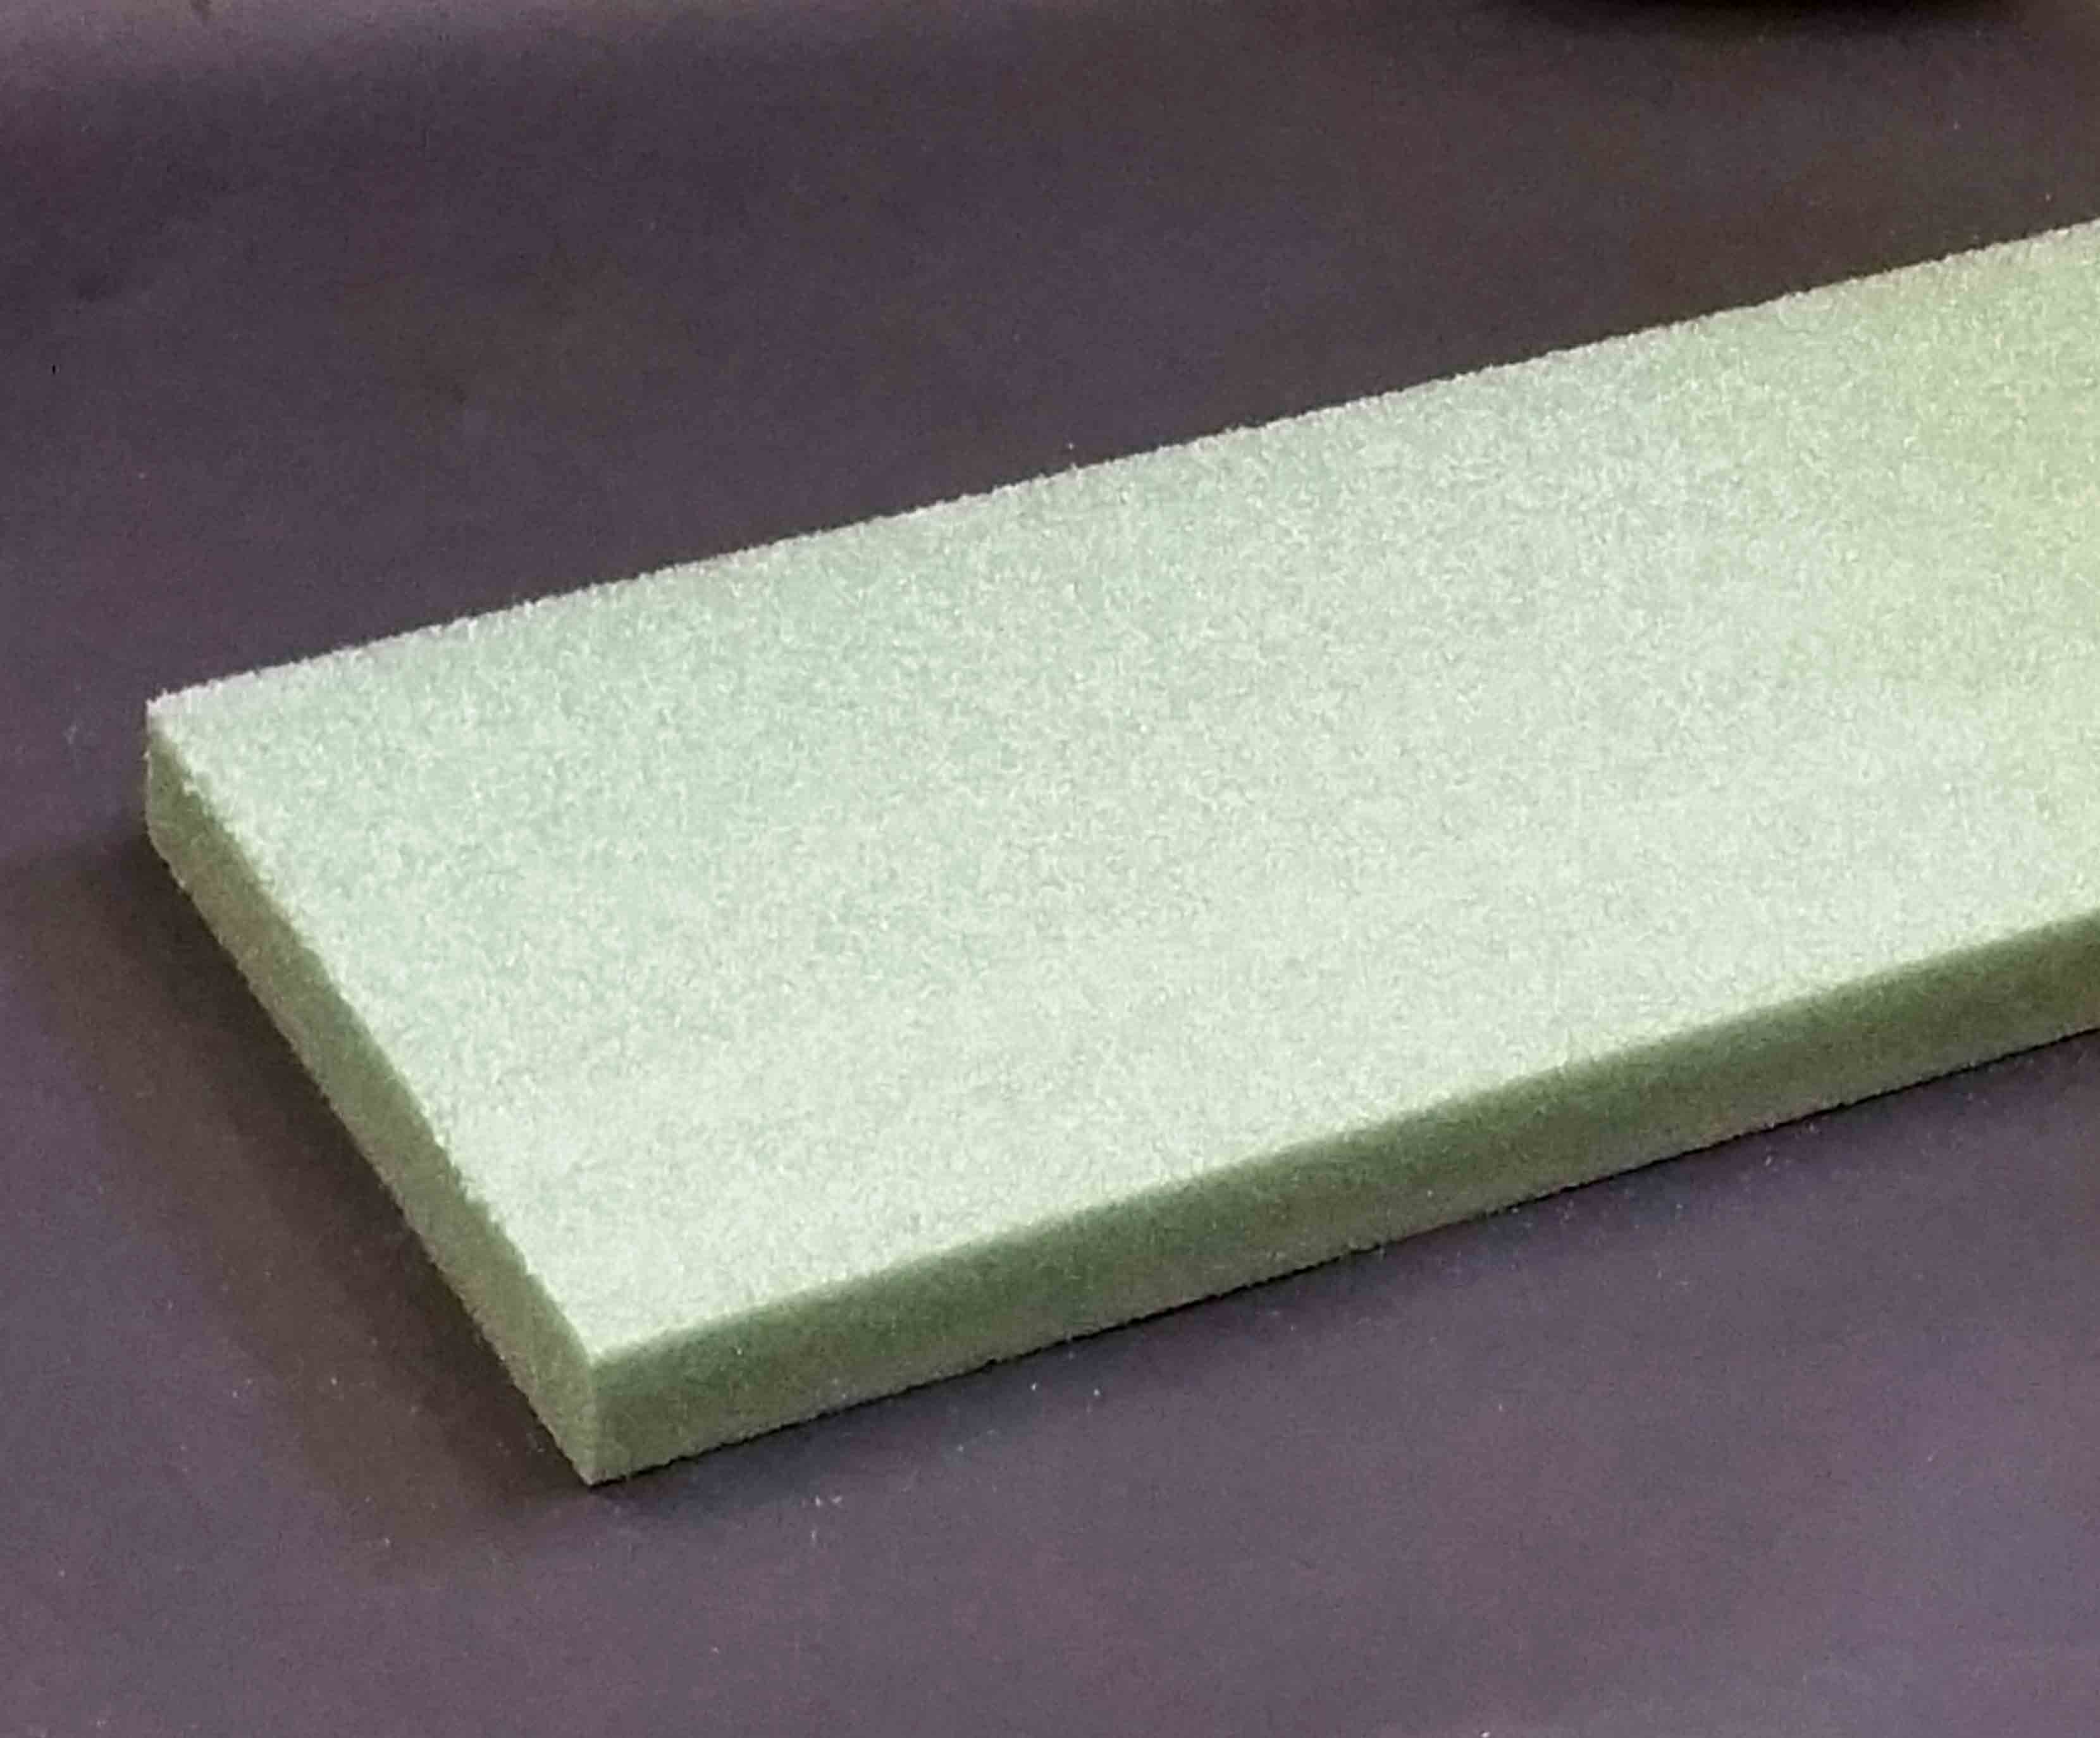 657 - 2" Green  Styrofoam Boards - 12.95 ea, 12.75/20